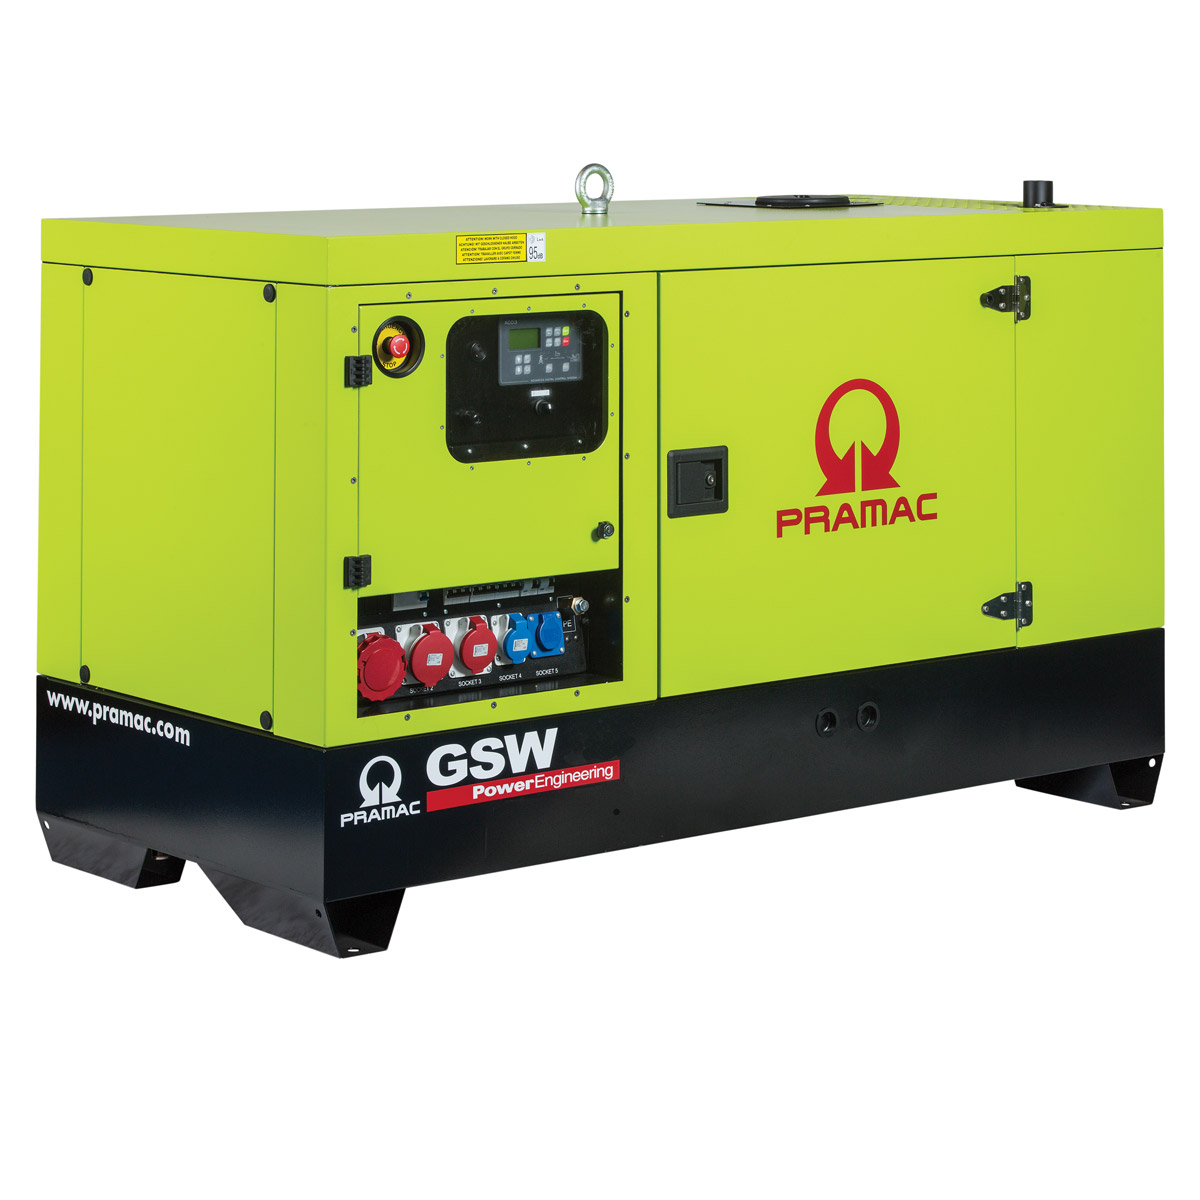 Stromerzeuger GSW 22 Pramac